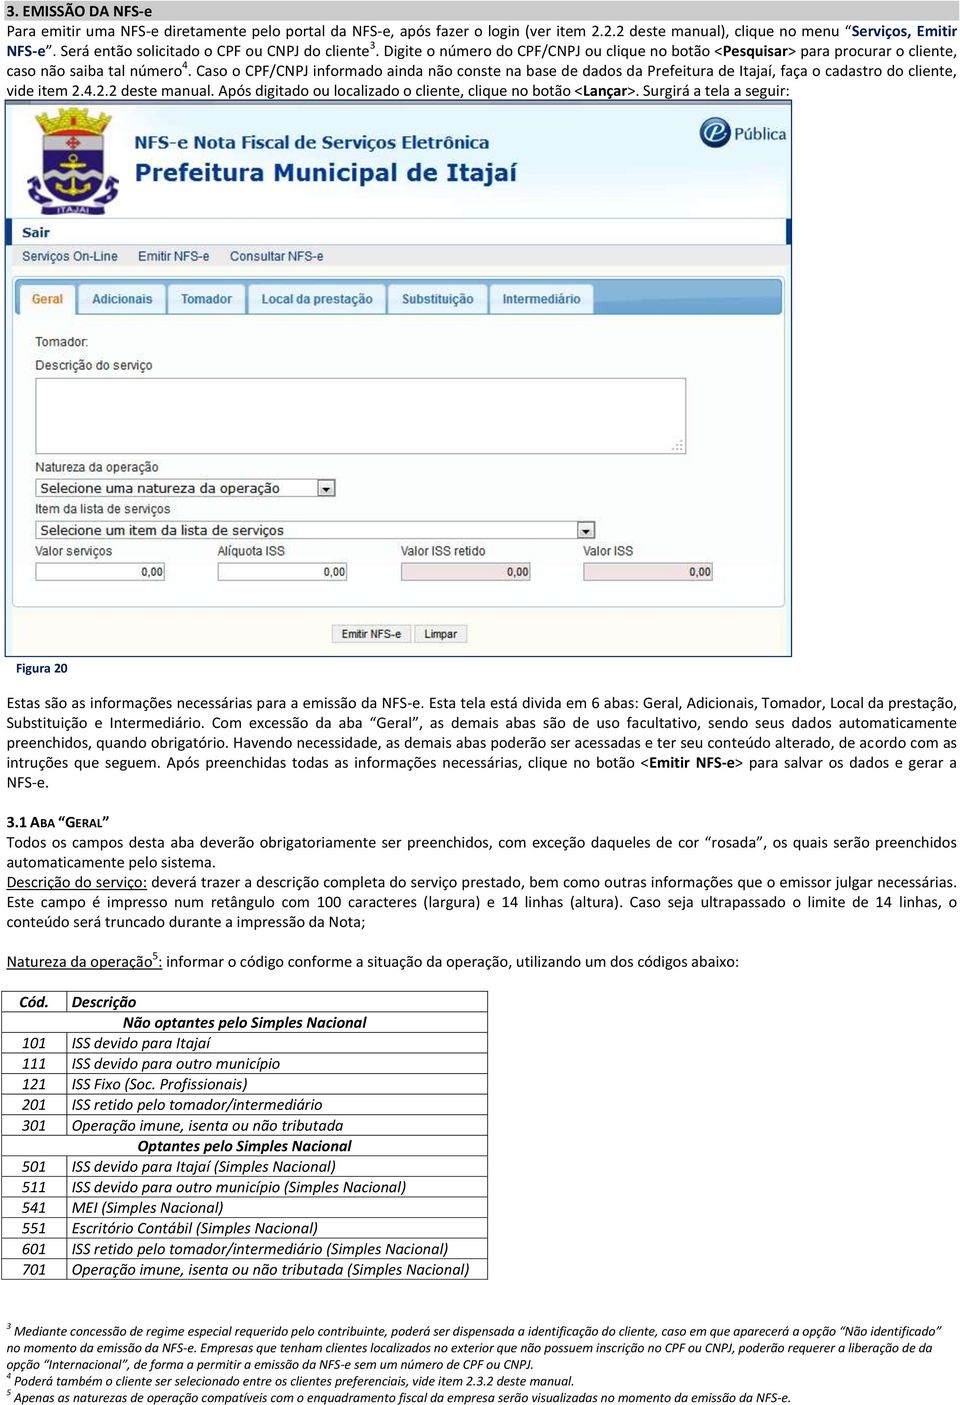 Caso o CPF/CNPJ informado ainda não conste na base de dados da Prefeitura de Itajaí, faça o cadastro do cliente, vide item 2.4.2.2 deste manual.